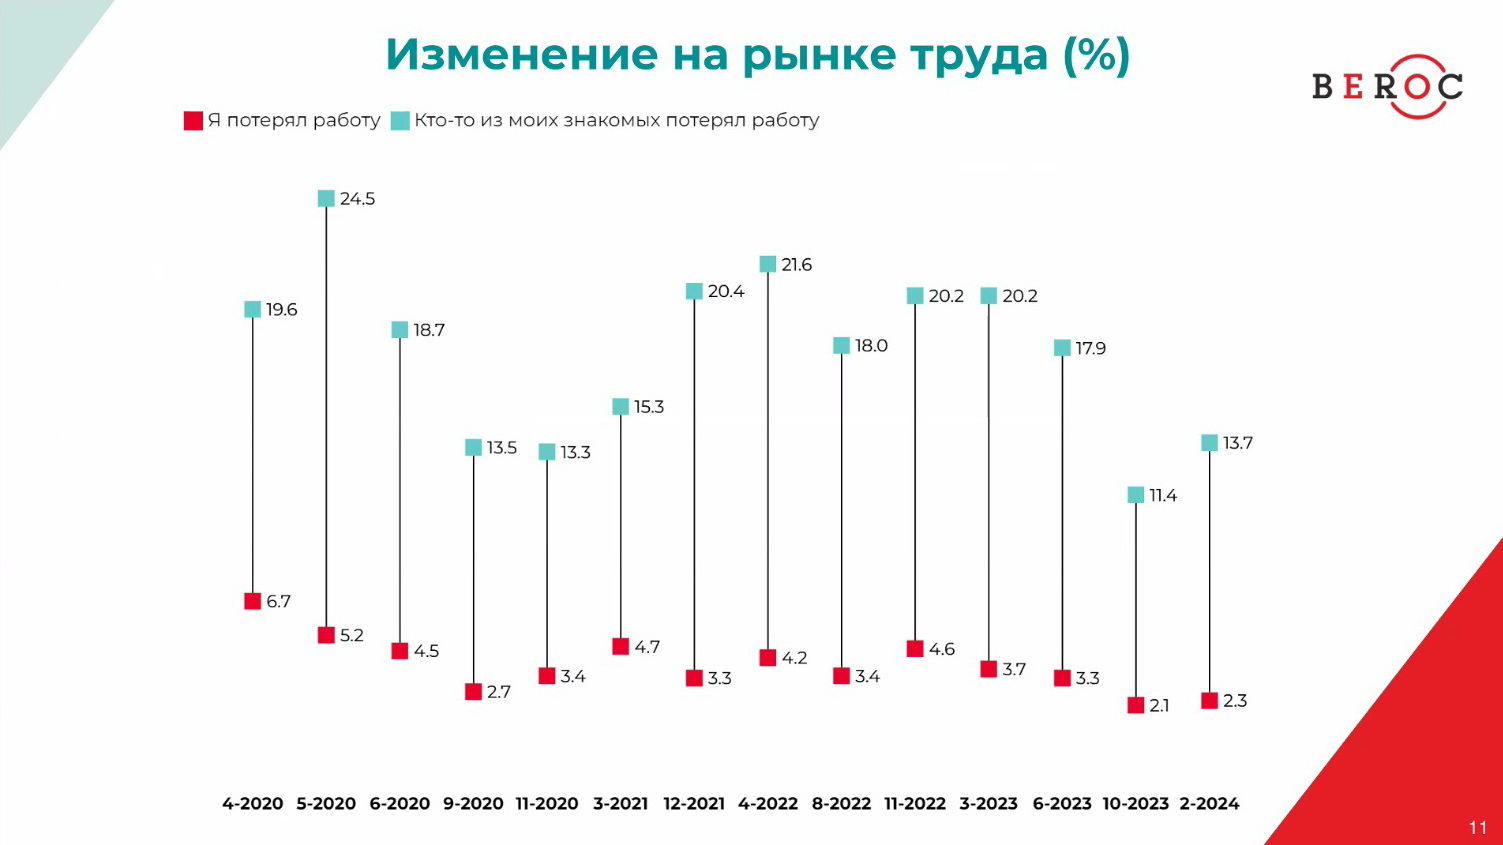 Беларусы оптимистичнее стали смотреть на состояние экономики, но меньше сберегают